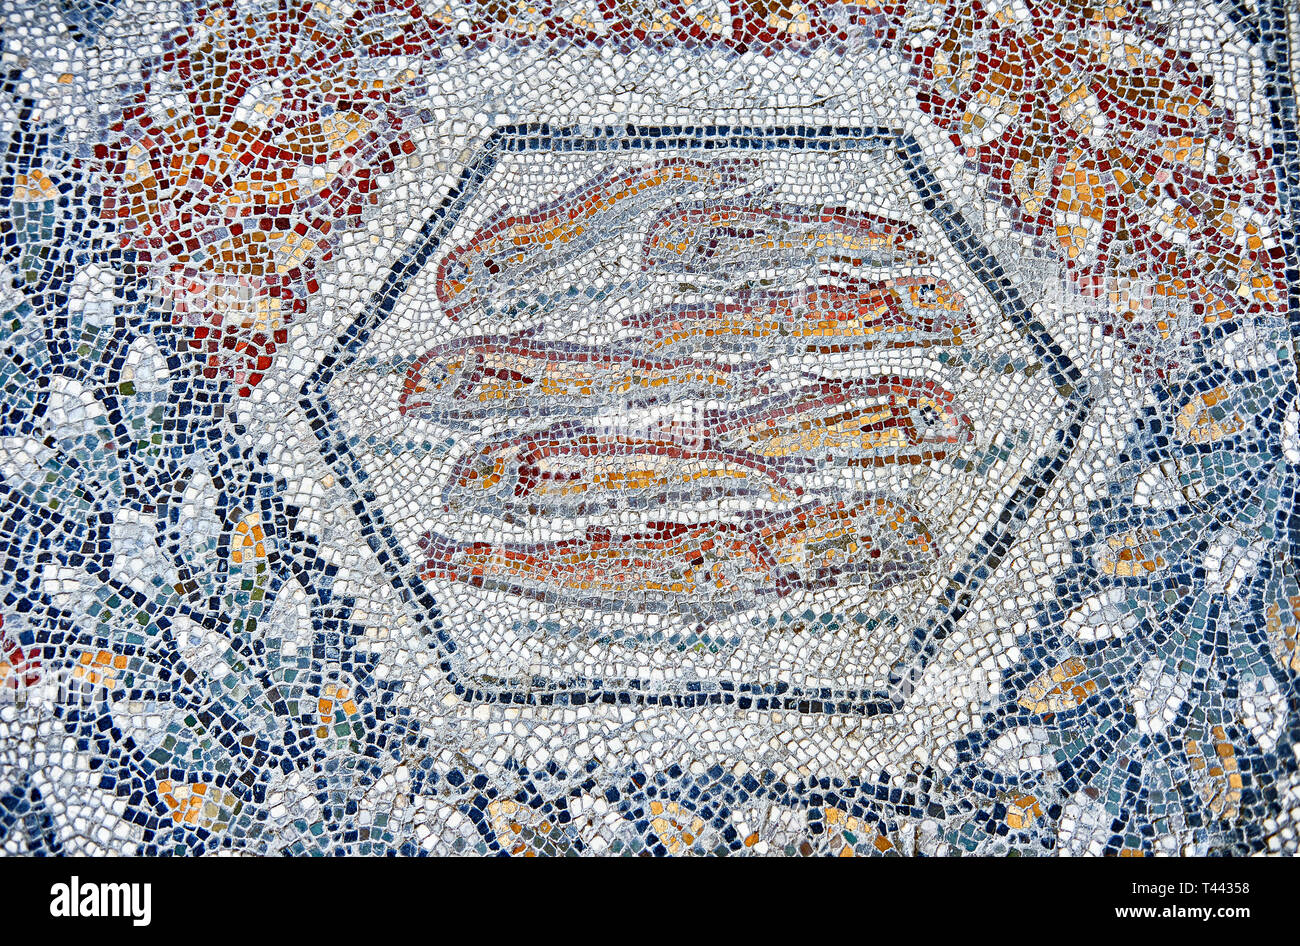 3e siècle mosaïque romaine de bord de poisson de Thugga, en Tunisie. Le Musée du Bardo, Tunis, Tunisie. Banque D'Images